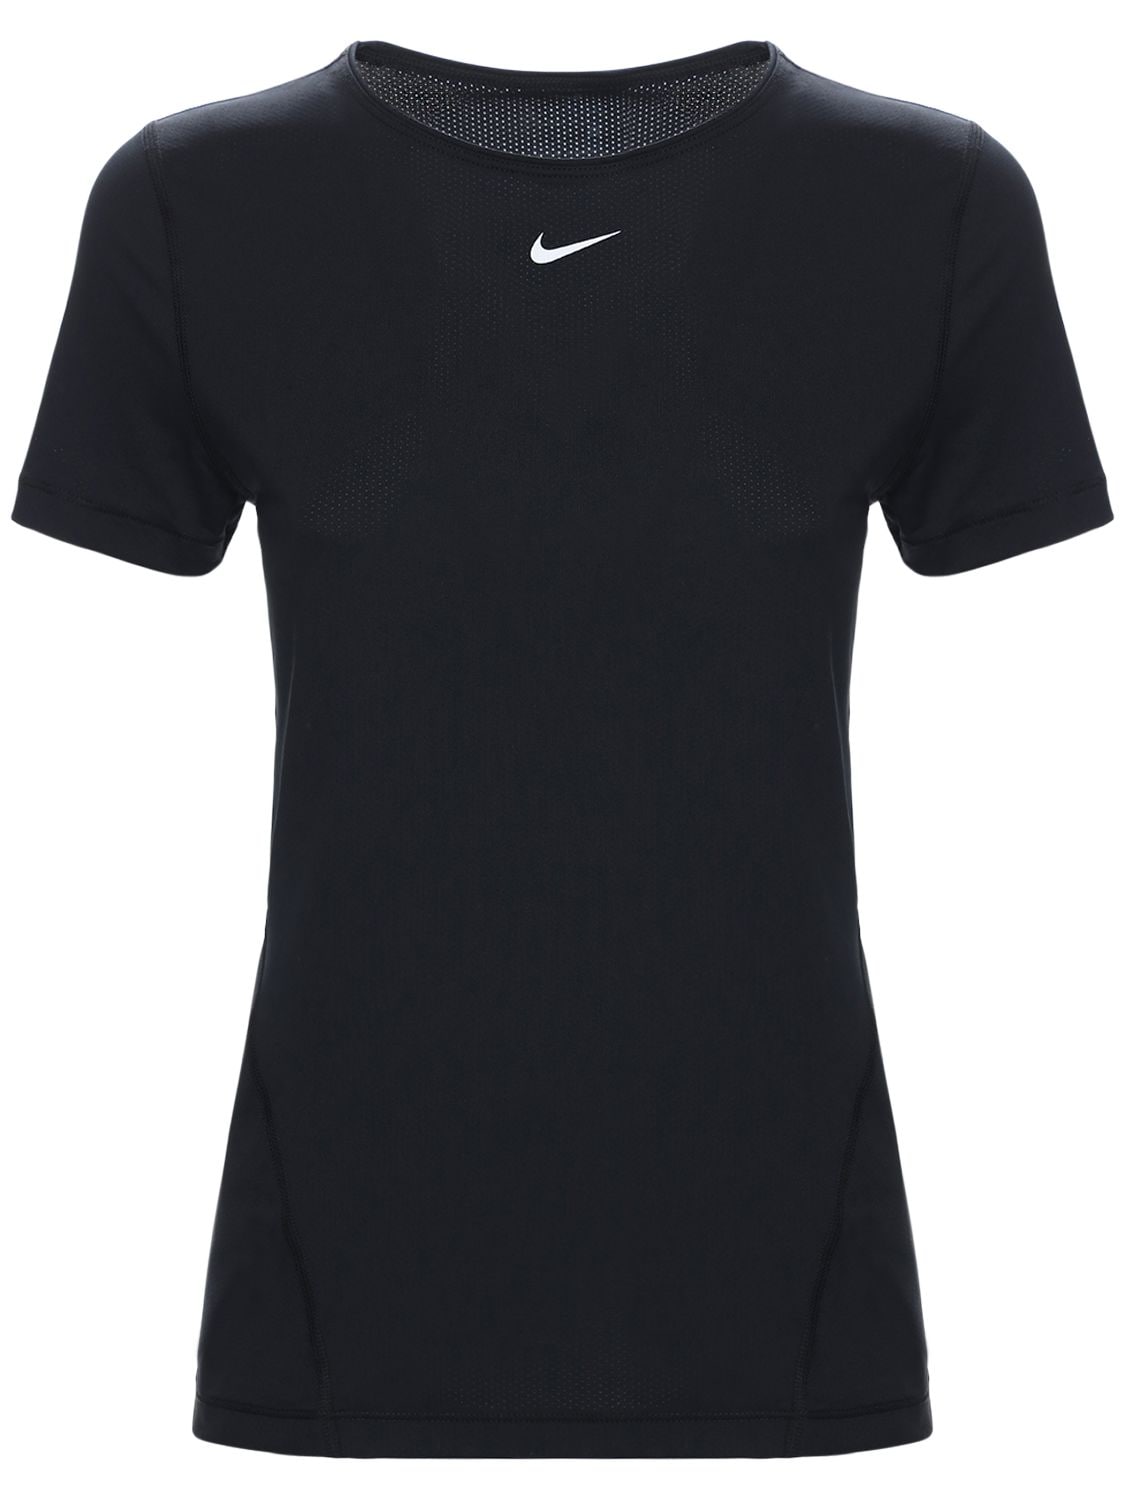 Nike Pro Tech Training T-shirt In Black